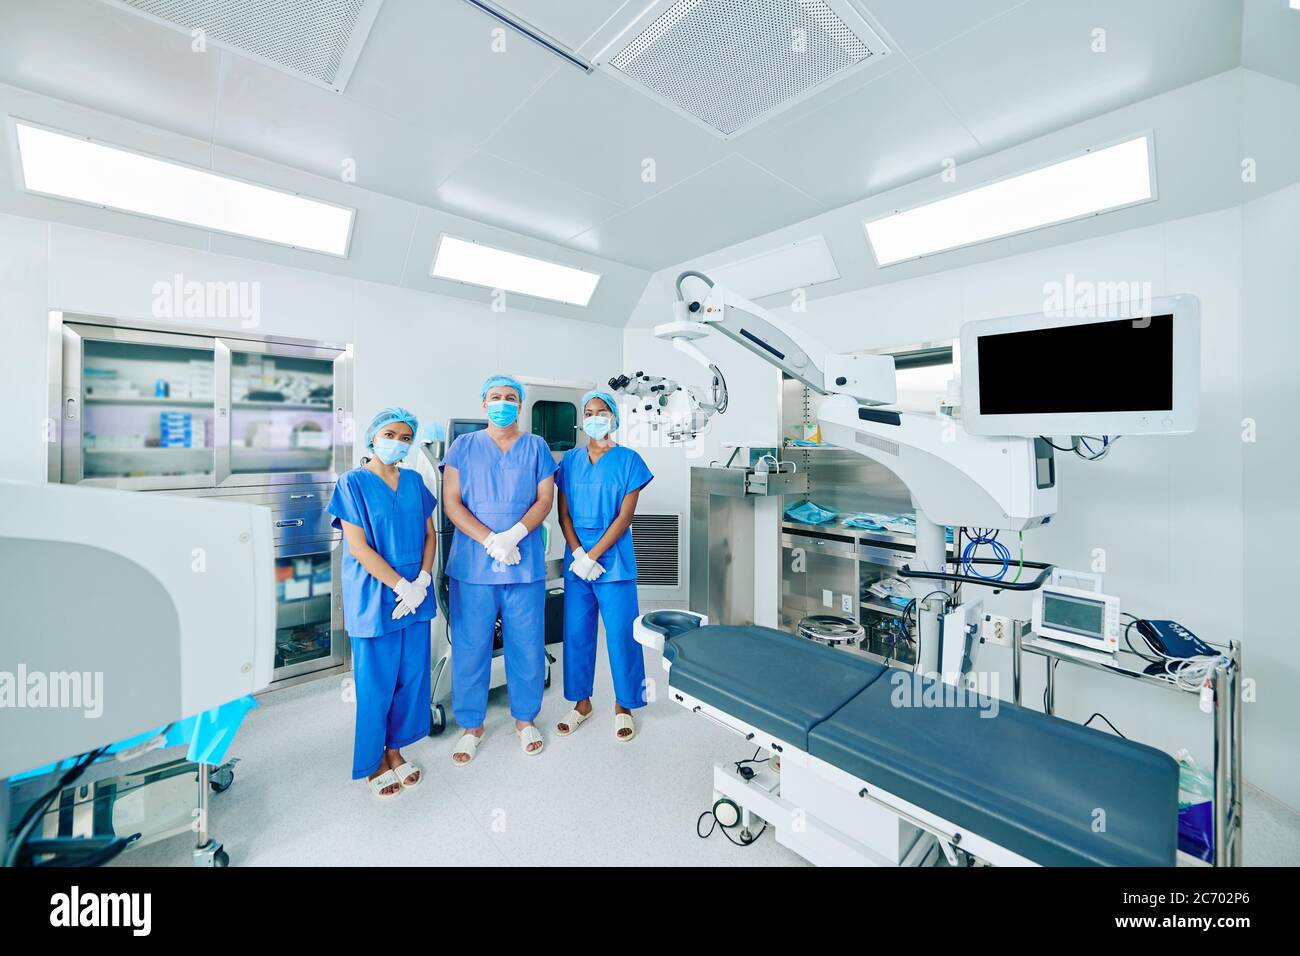 Seriöse medizinische Arbeiter in OP-Uniform, Masken und Handschuhe stehen im OP-Theater Stockfoto